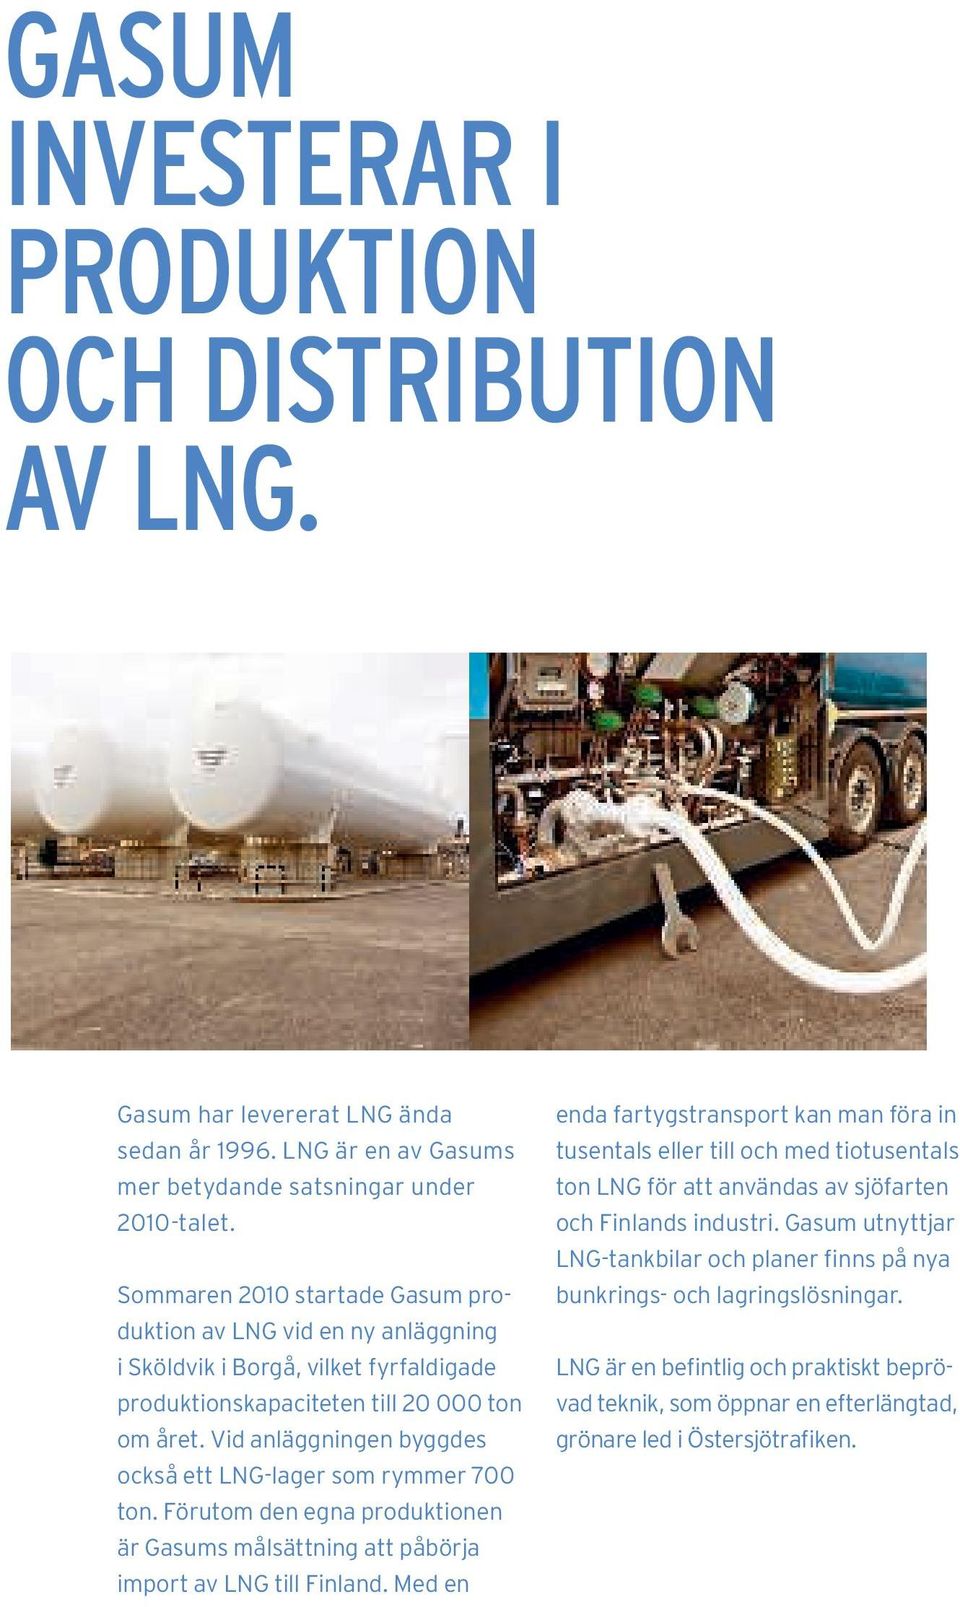 Vid anläggningen byggdes också ett LNG-lager som rymmer 700 ton. Förutom den egna produktionen är Gasums målsättning att påbörja import av LNG till Finland.